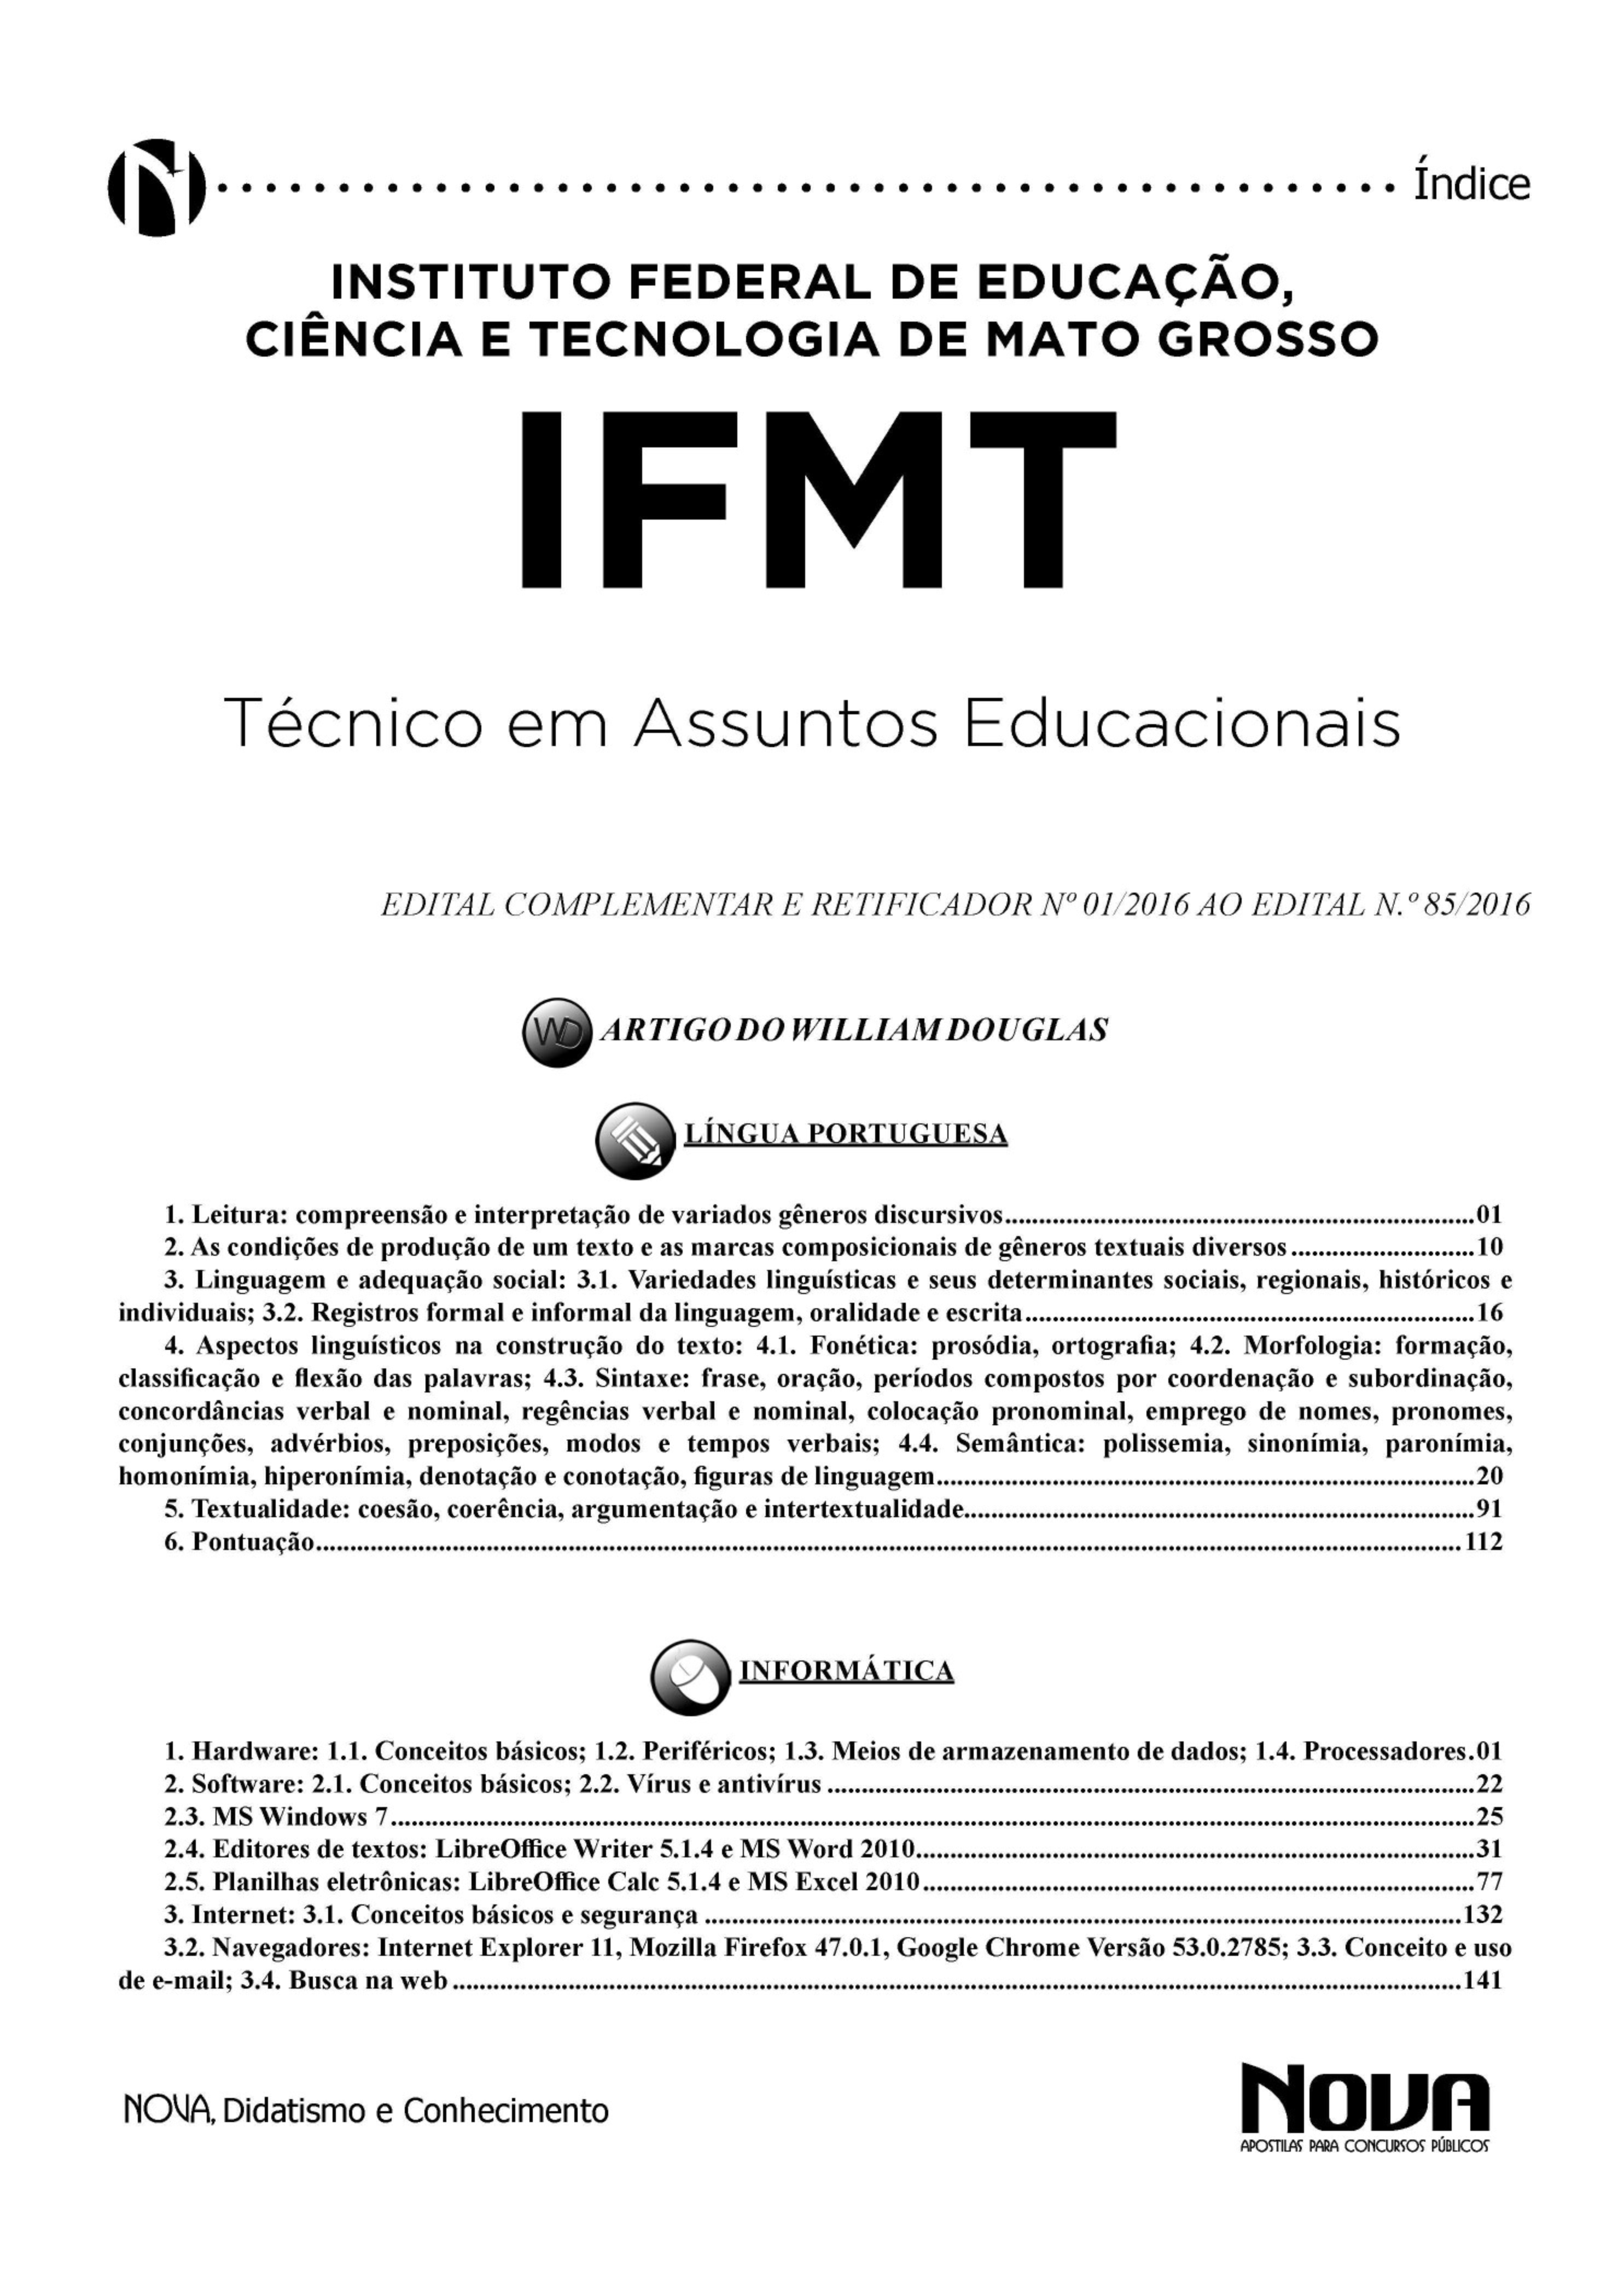 Apostila IFMT - Técnico em Assuntos Educacionais | Apostila Impressa